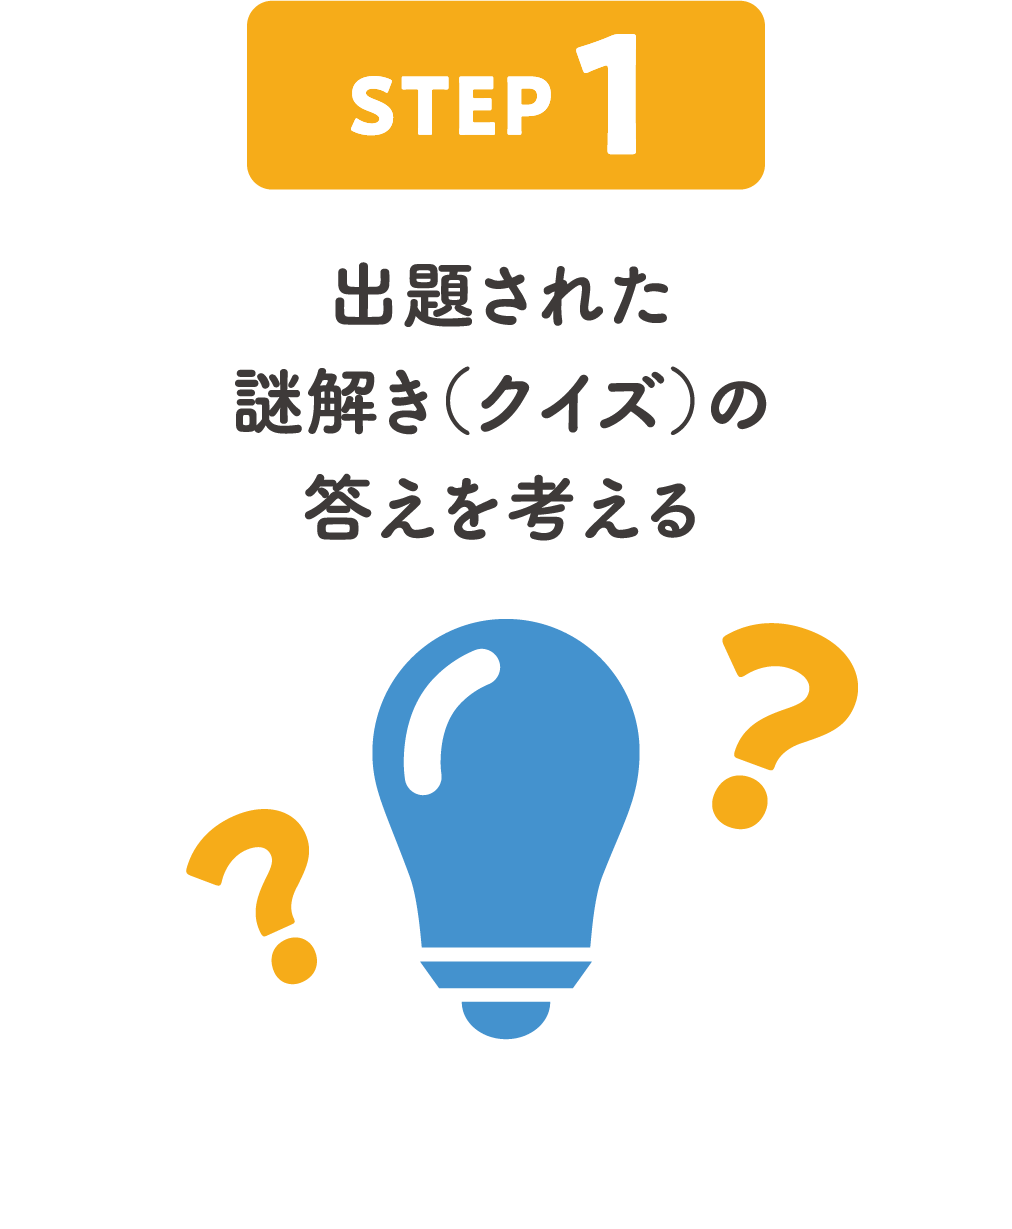 STEP1:出題された謎解き（クイズ）の答えを考える